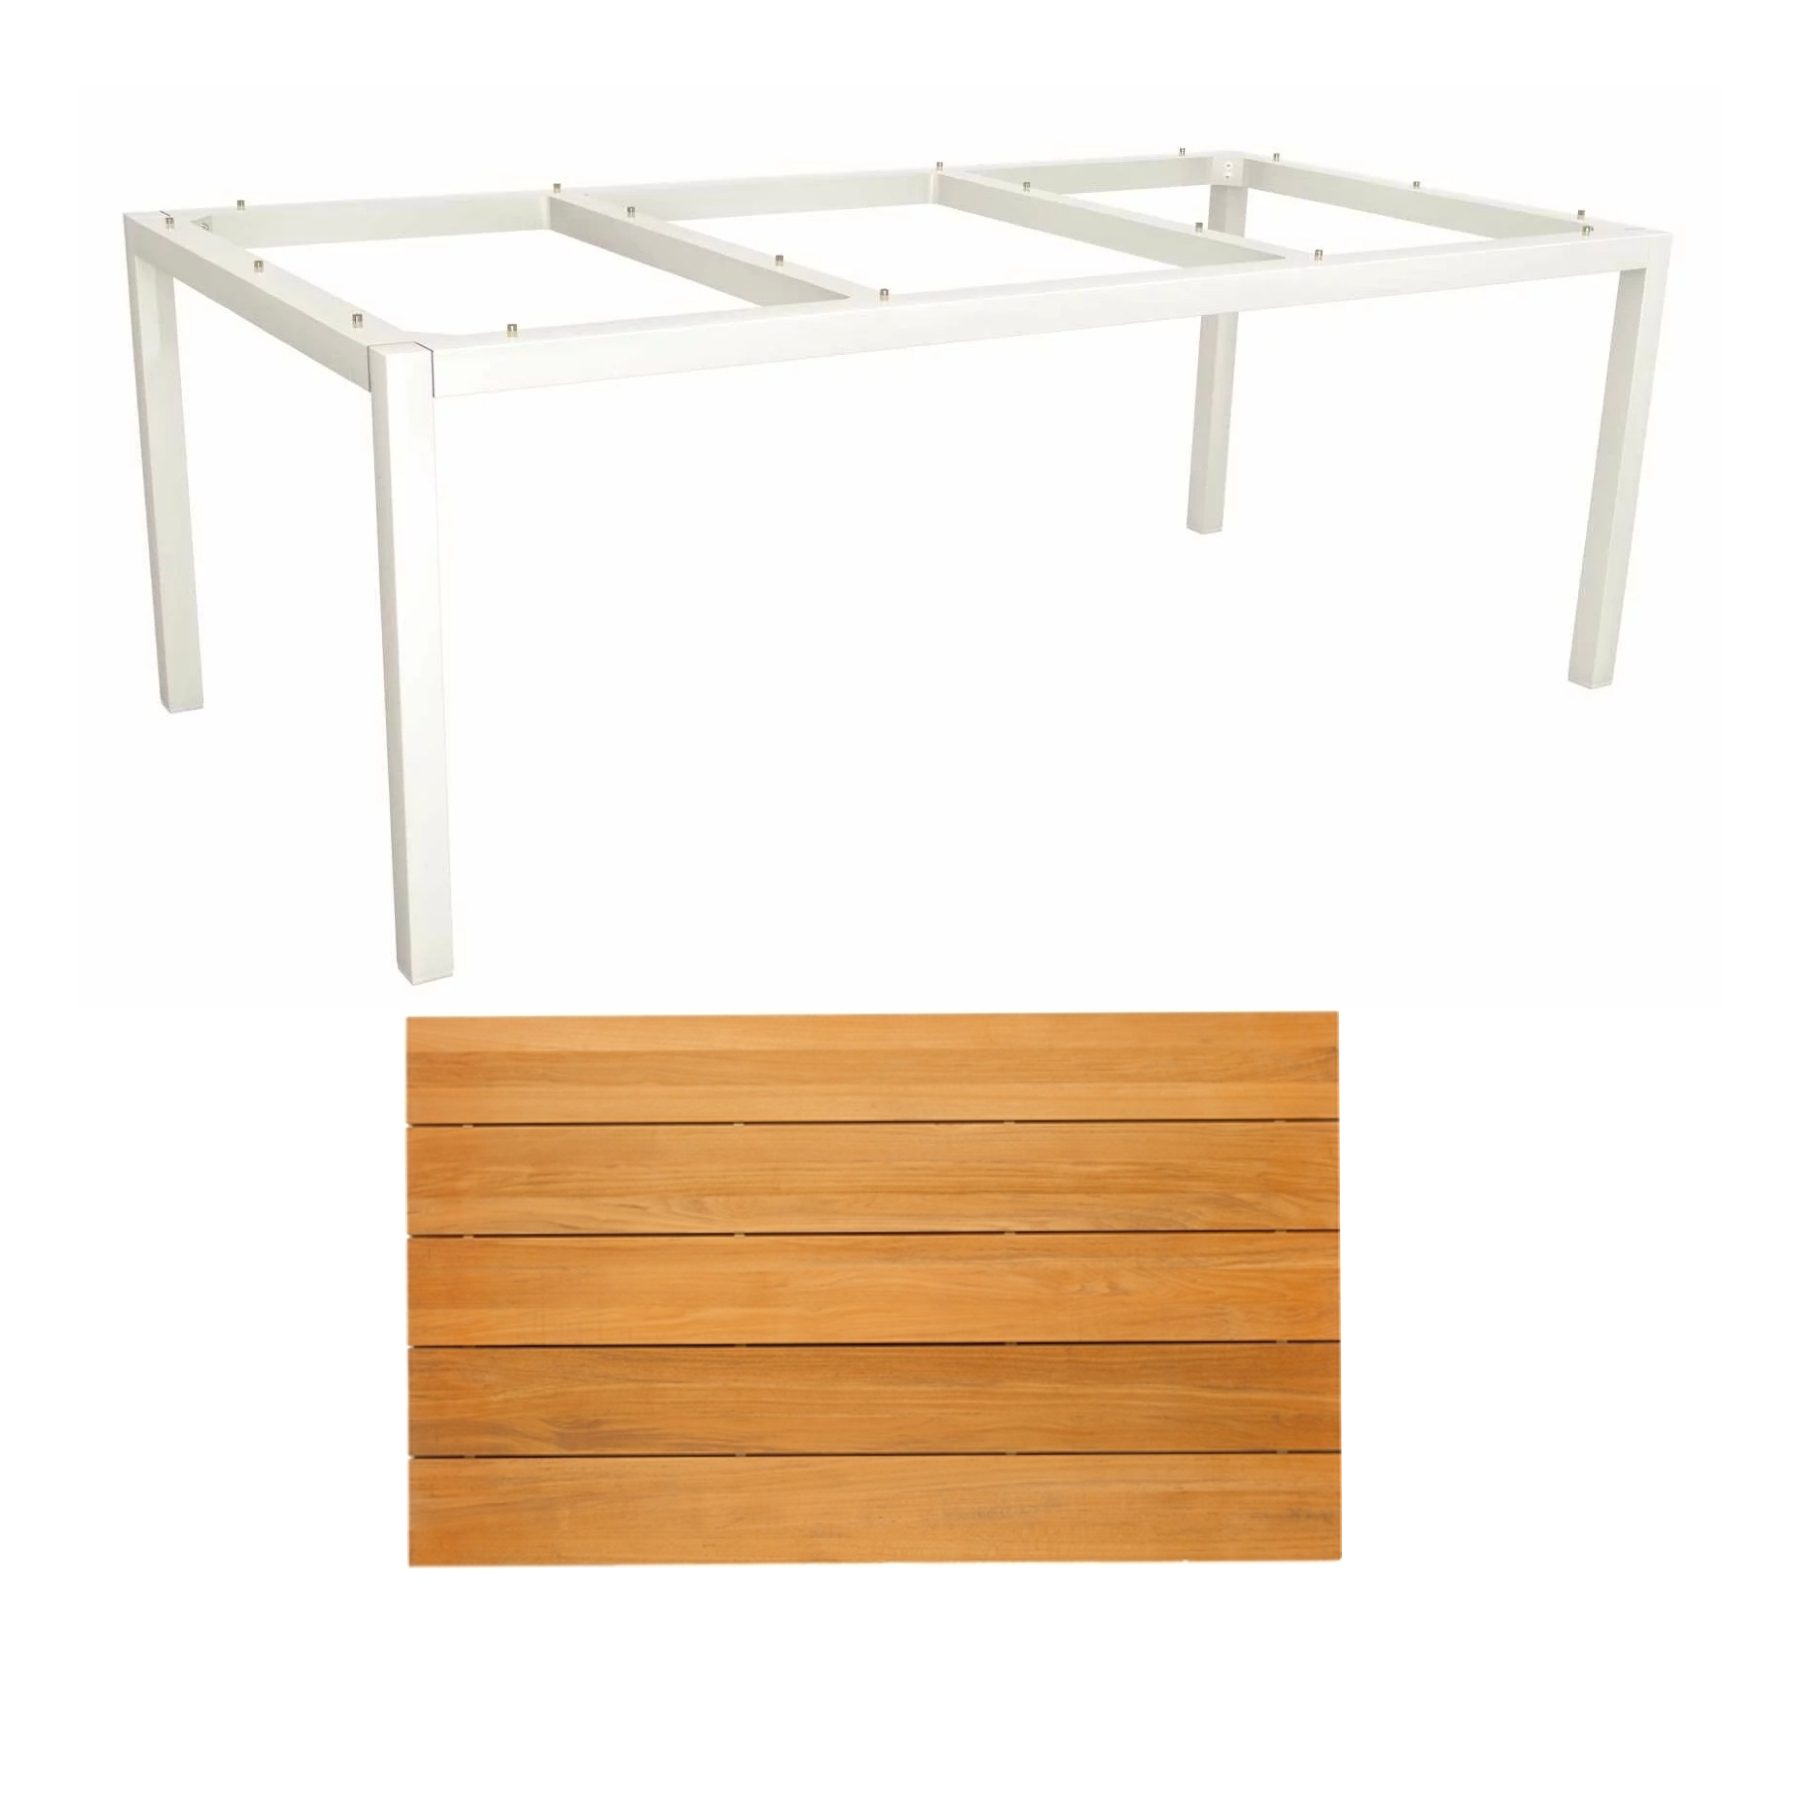 Stern Tischsystem Gartentisch, Gestell Aluminium weiß, Tischplatte Teakholz Einzelleisten, 201x101 cm